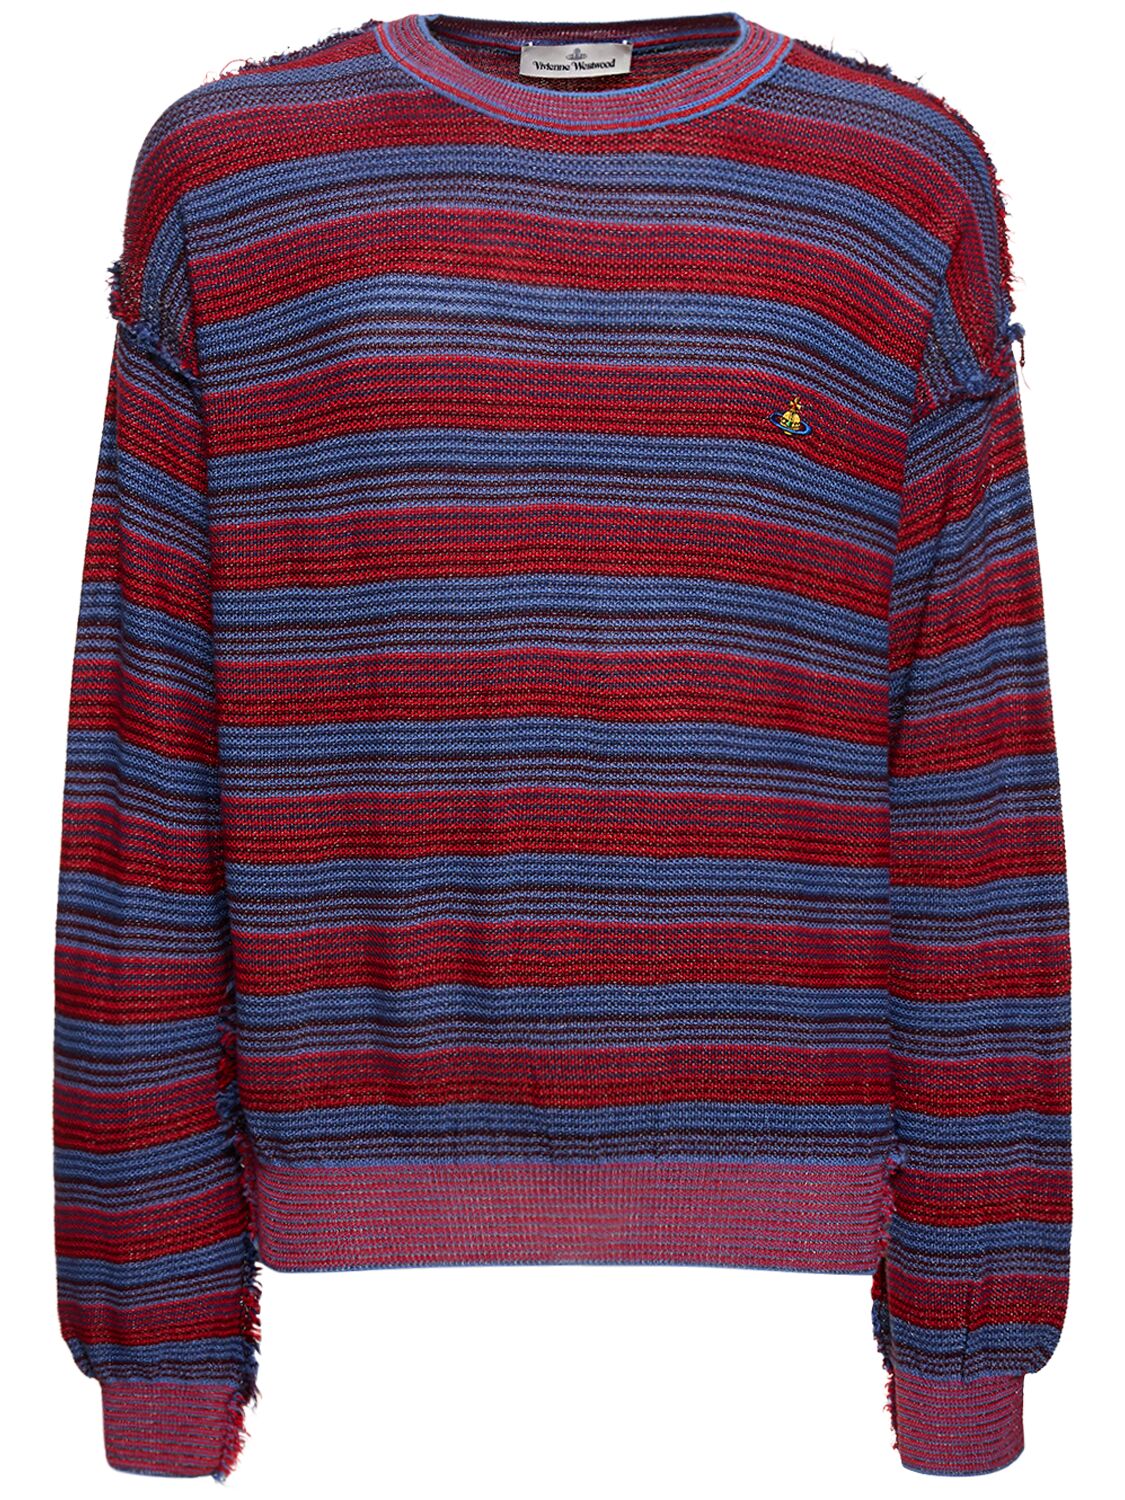 Vivienne Westwood Striped Wool & Silk Knit Jumper In Red,purple